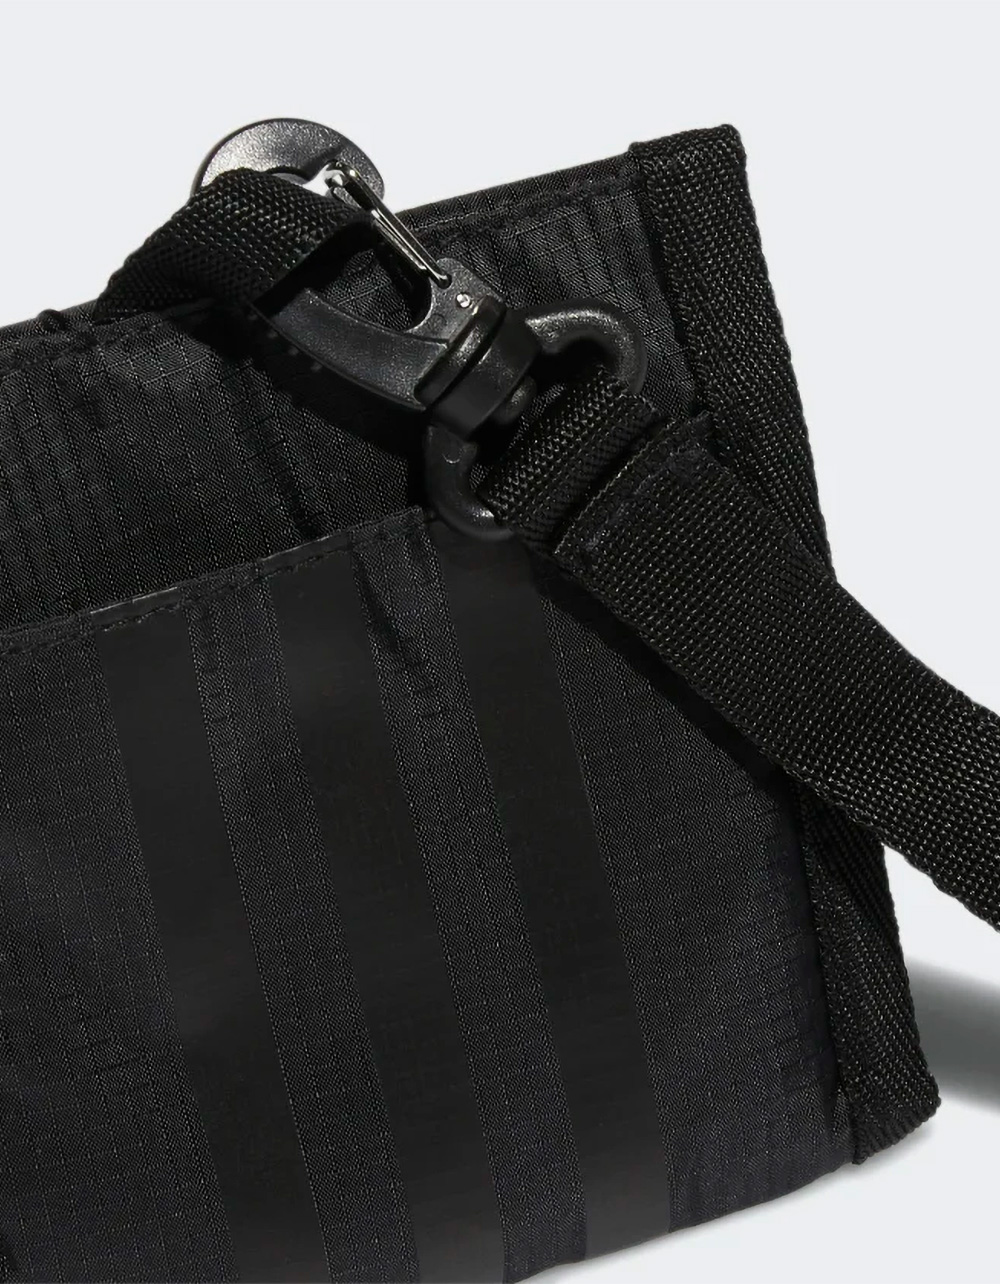 Picknicken Faial Leugen ADIDAS Originals Lanyard Crossbody Bag - BLACK | Tillys